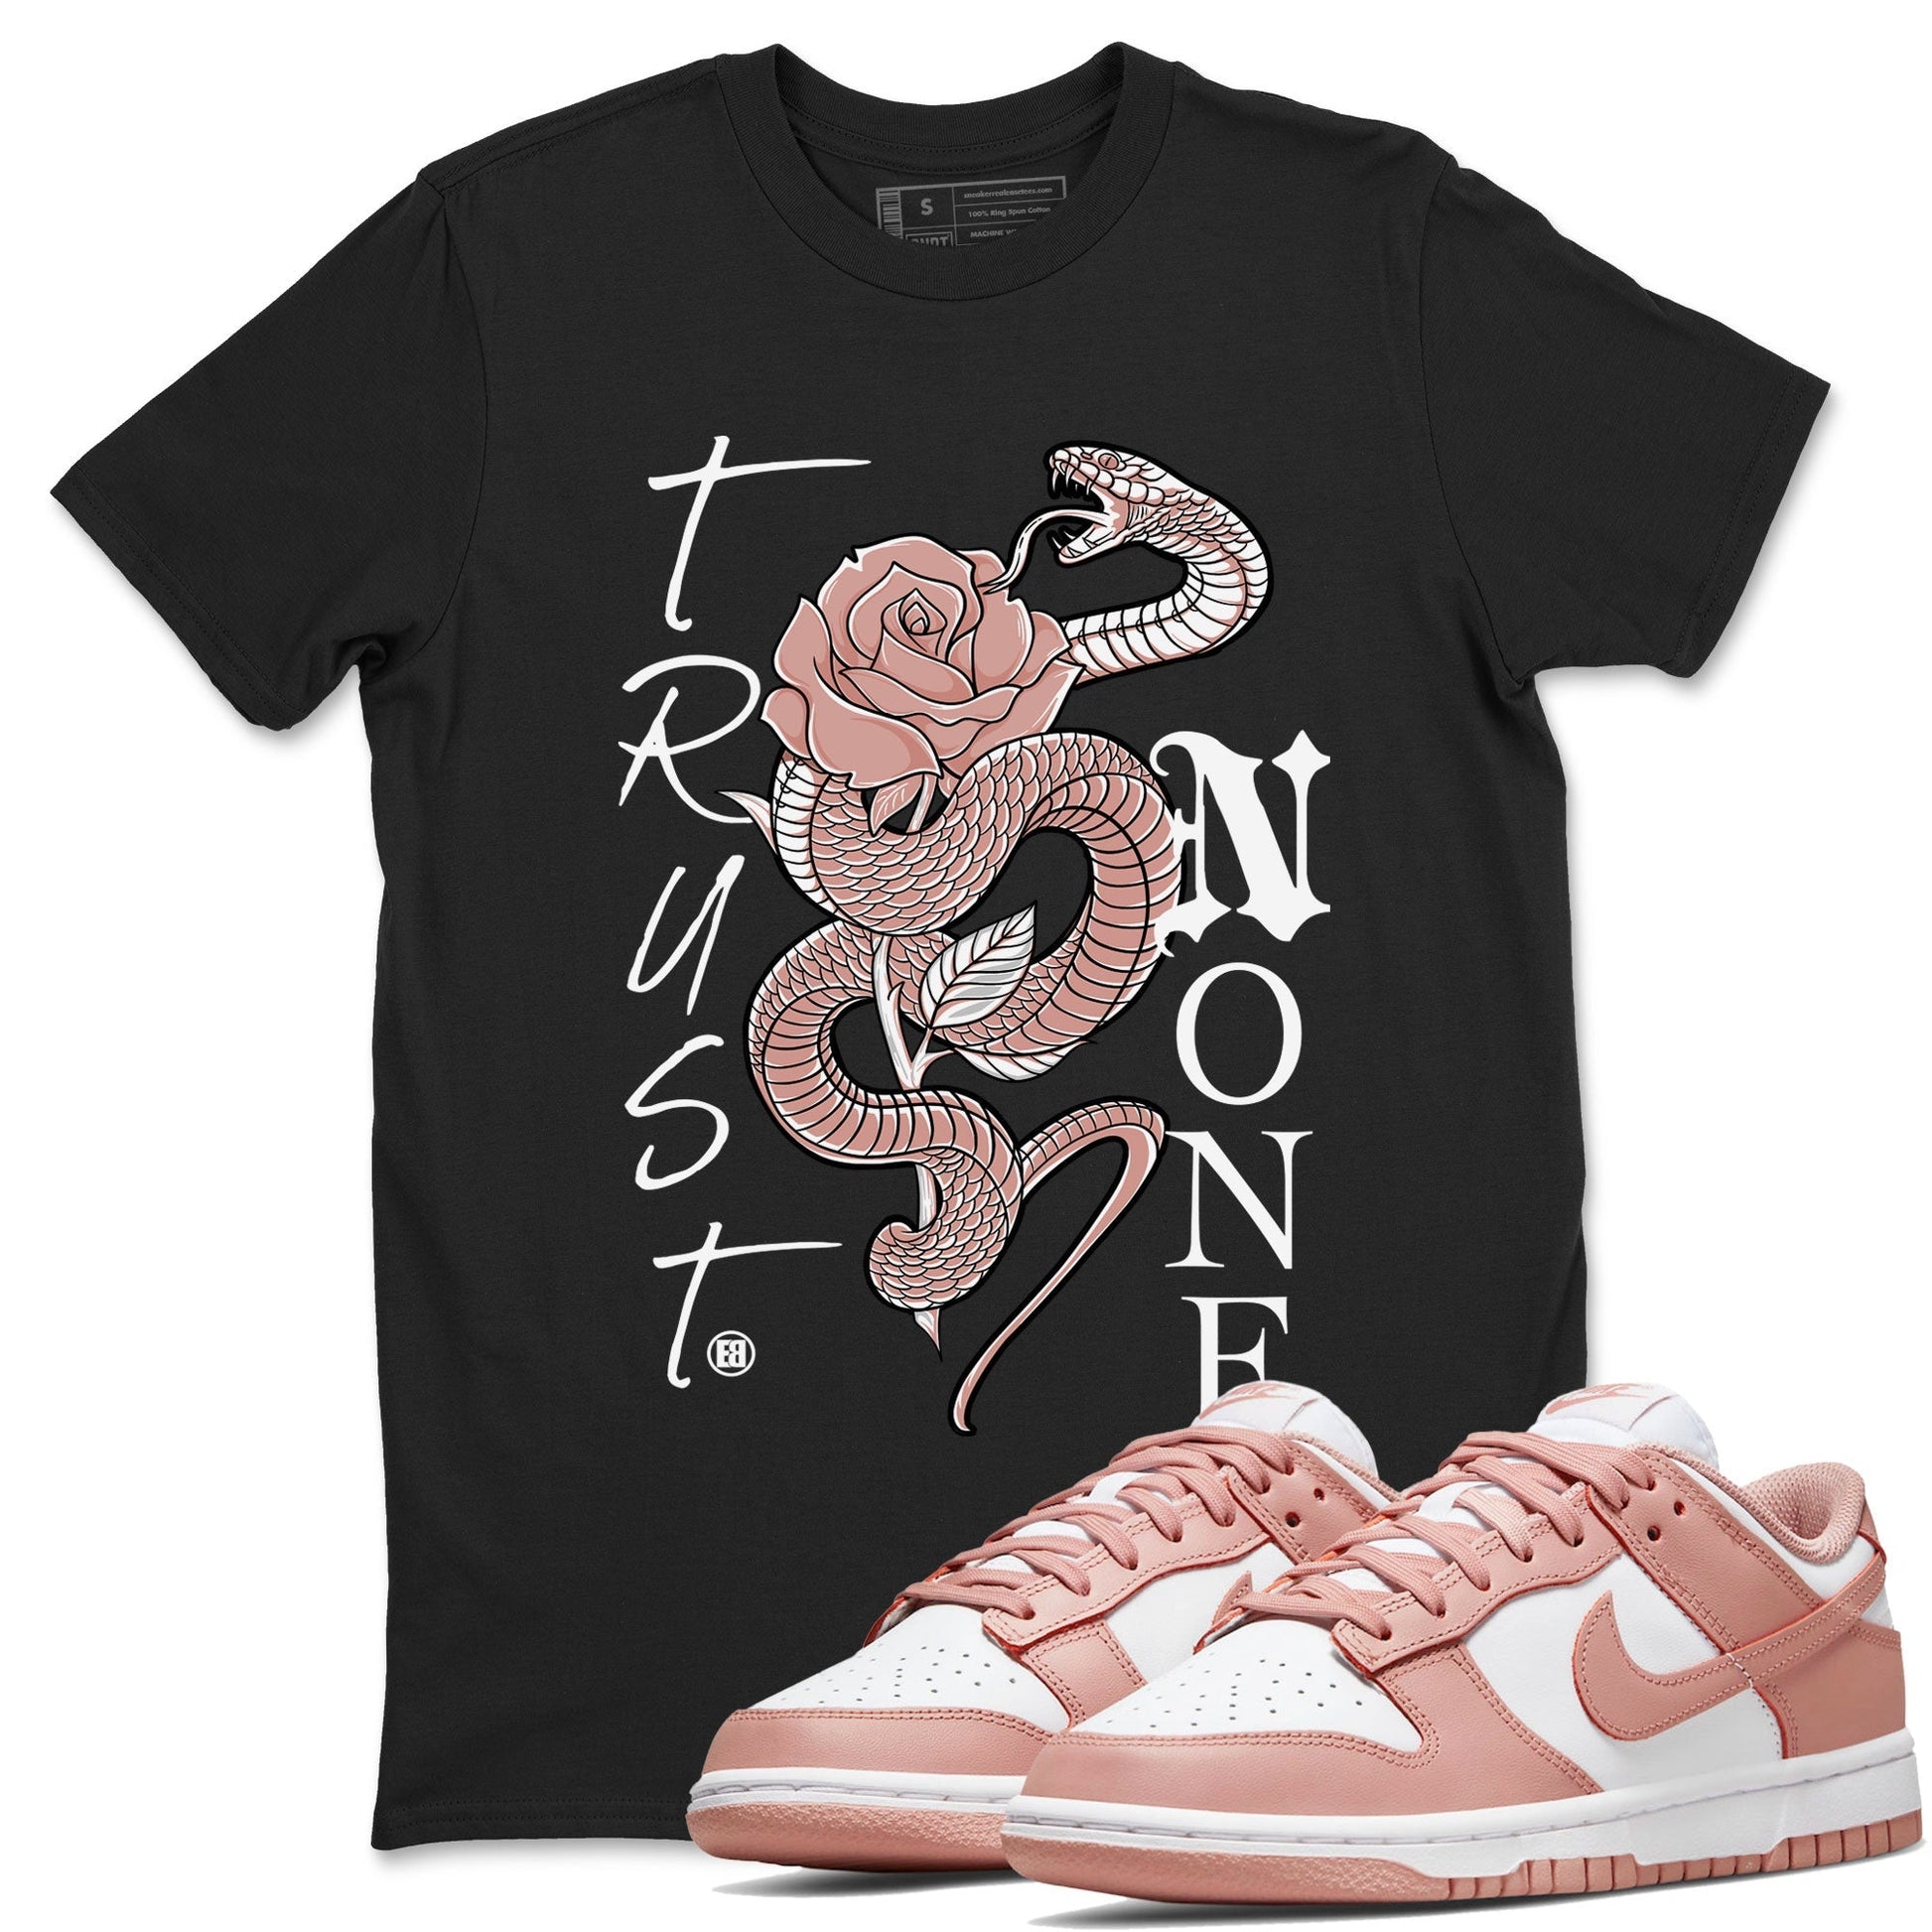 Dunk Low WMNS Rose Whisper shirt to match jordans Trust None Streetwear Sneaker Shirt Dunk Rose Whisper Drip Gear Zone Sneaker Matching Clothing Casual Unisex shirts Black 1 T-Shirt